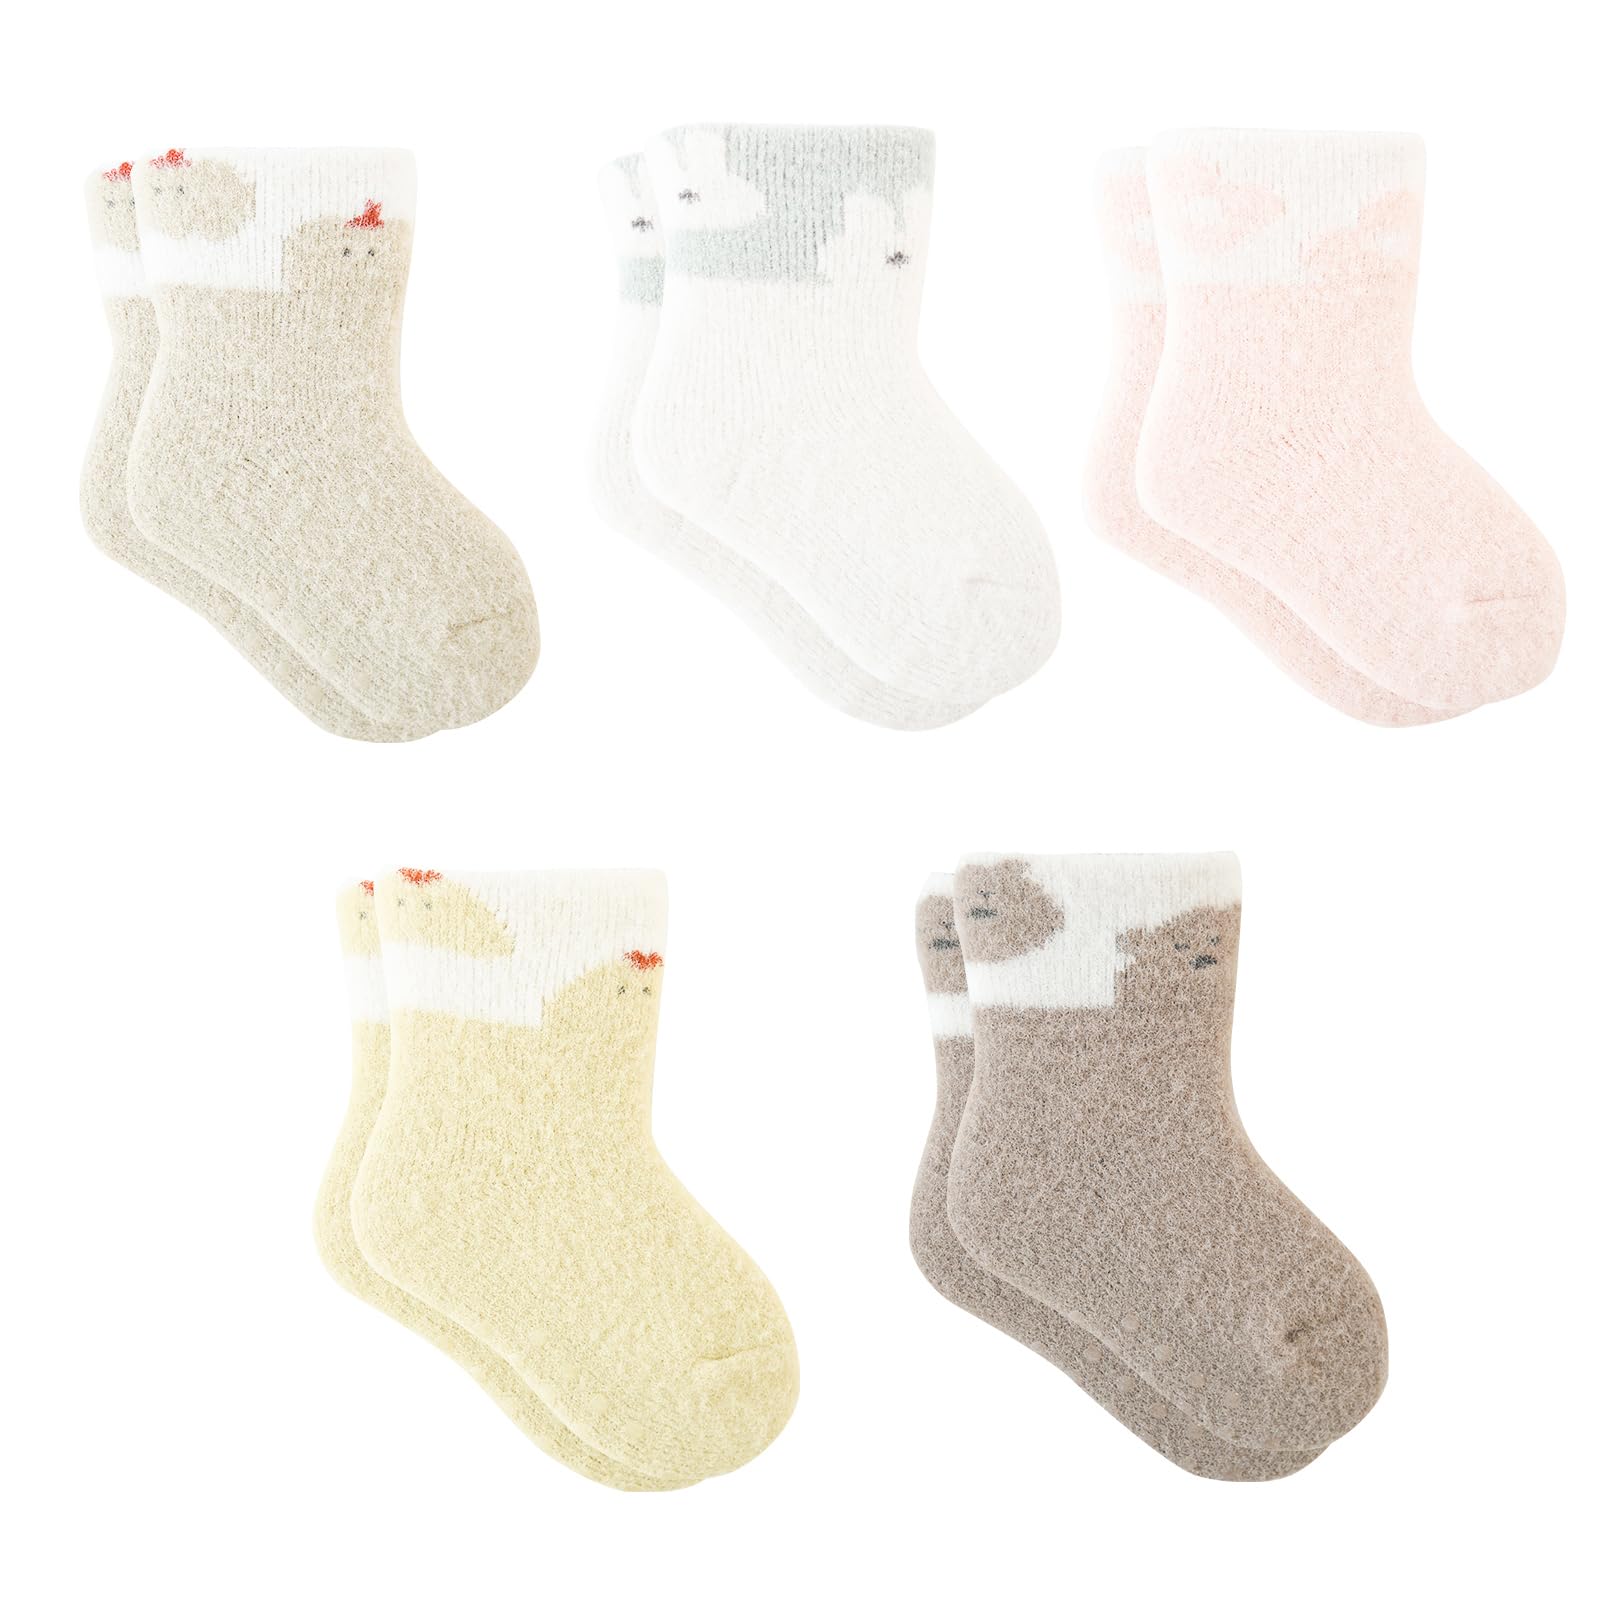 MOMSMENU ベビー ソックス 冬用 分厚くて暖かい 履き口ゆったりシリーズ 赤ちゃん 靴下 可愛い 滑り止め付き 6ヶ月から12ヶ月 5足セット